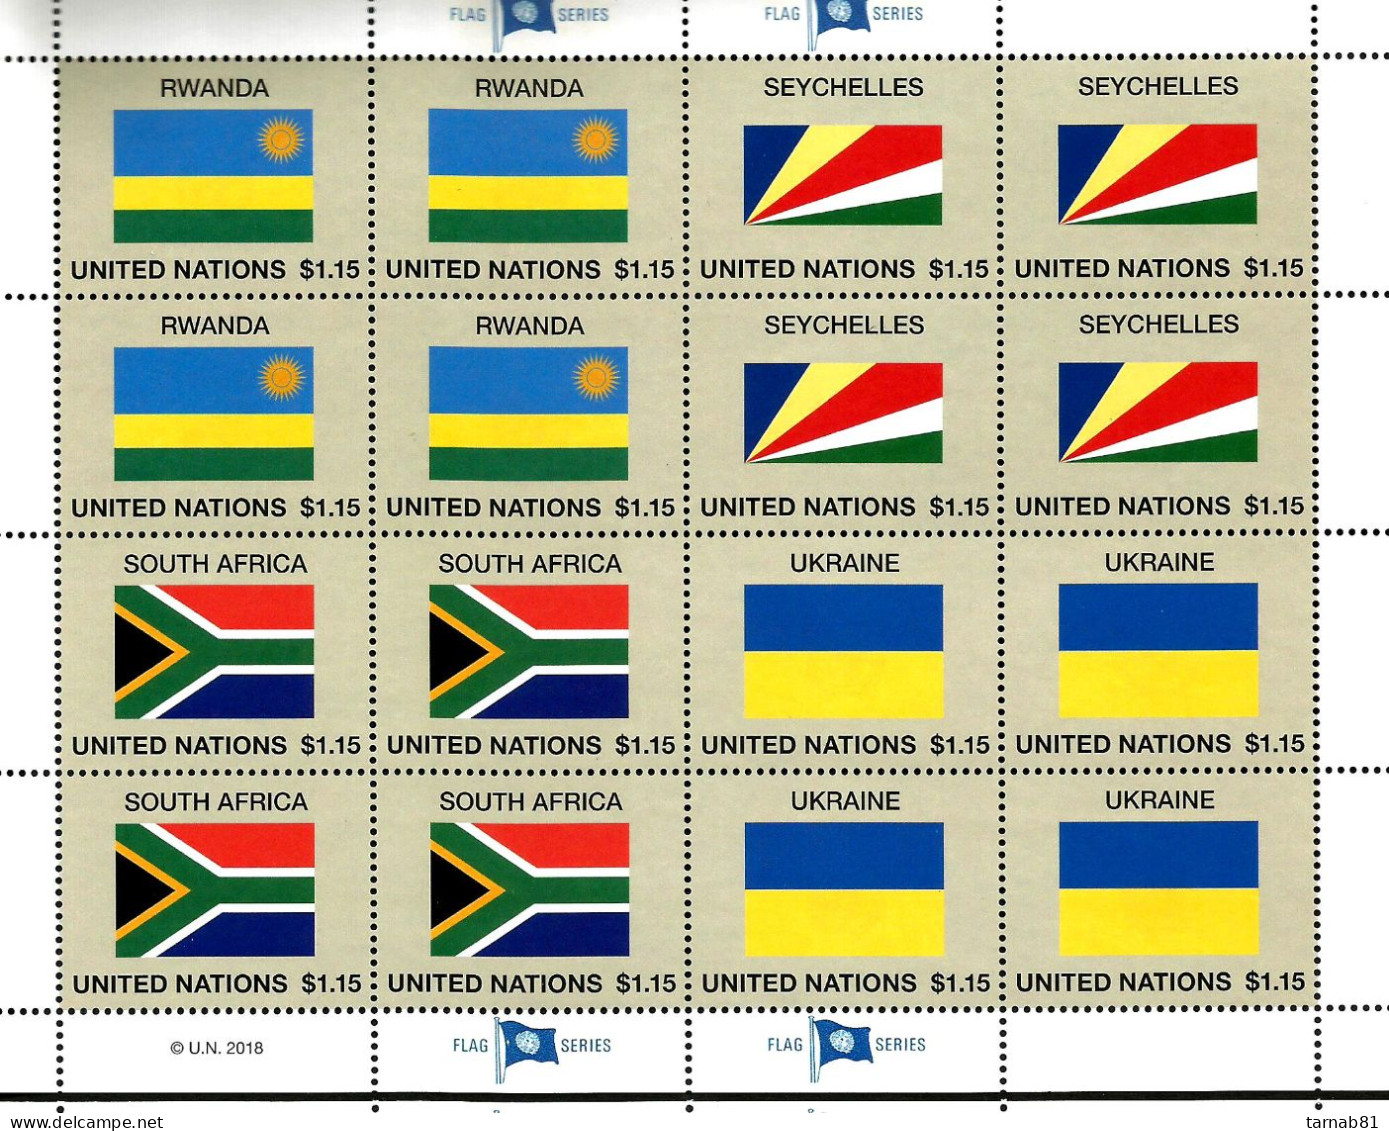 ONU  2018 Nations Unies Drapeaux Flags Flaggen  2018 ONU - Hojas Y Bloques